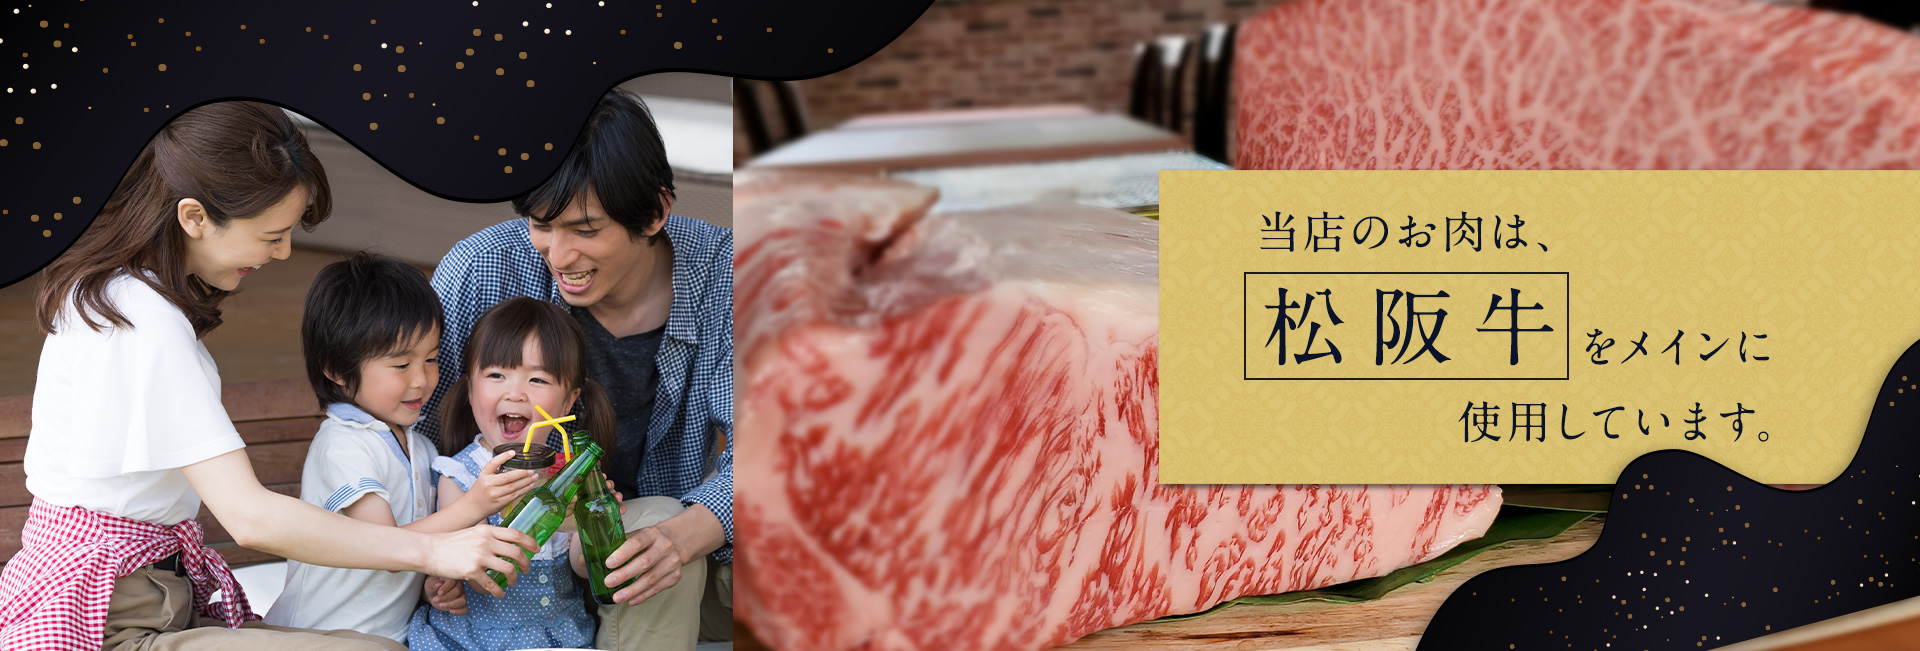 当店のお肉は松坂牛をメインに使用しています。